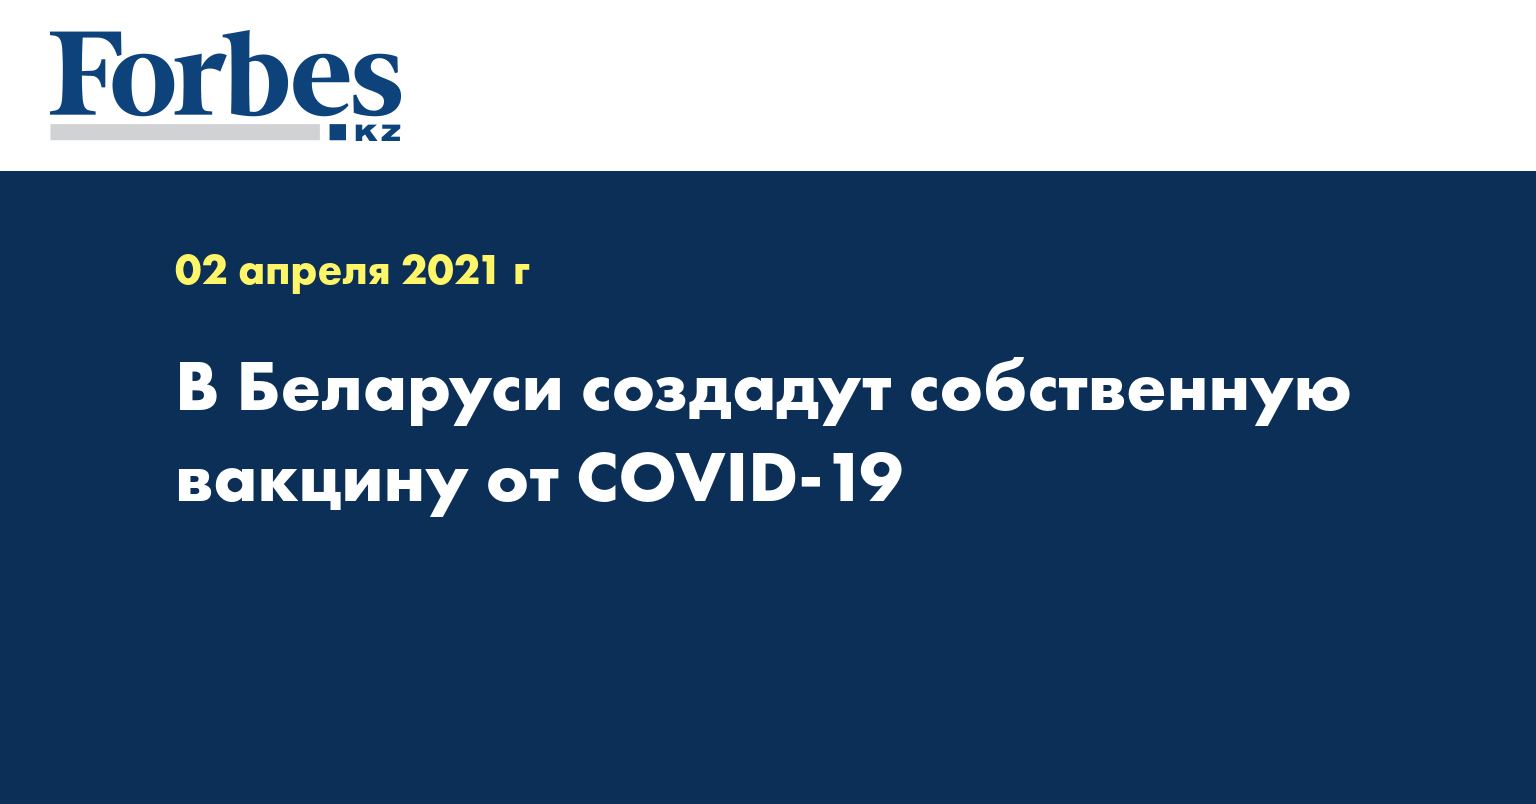 В Беларуси создадут собственную вакцину от COVID-19